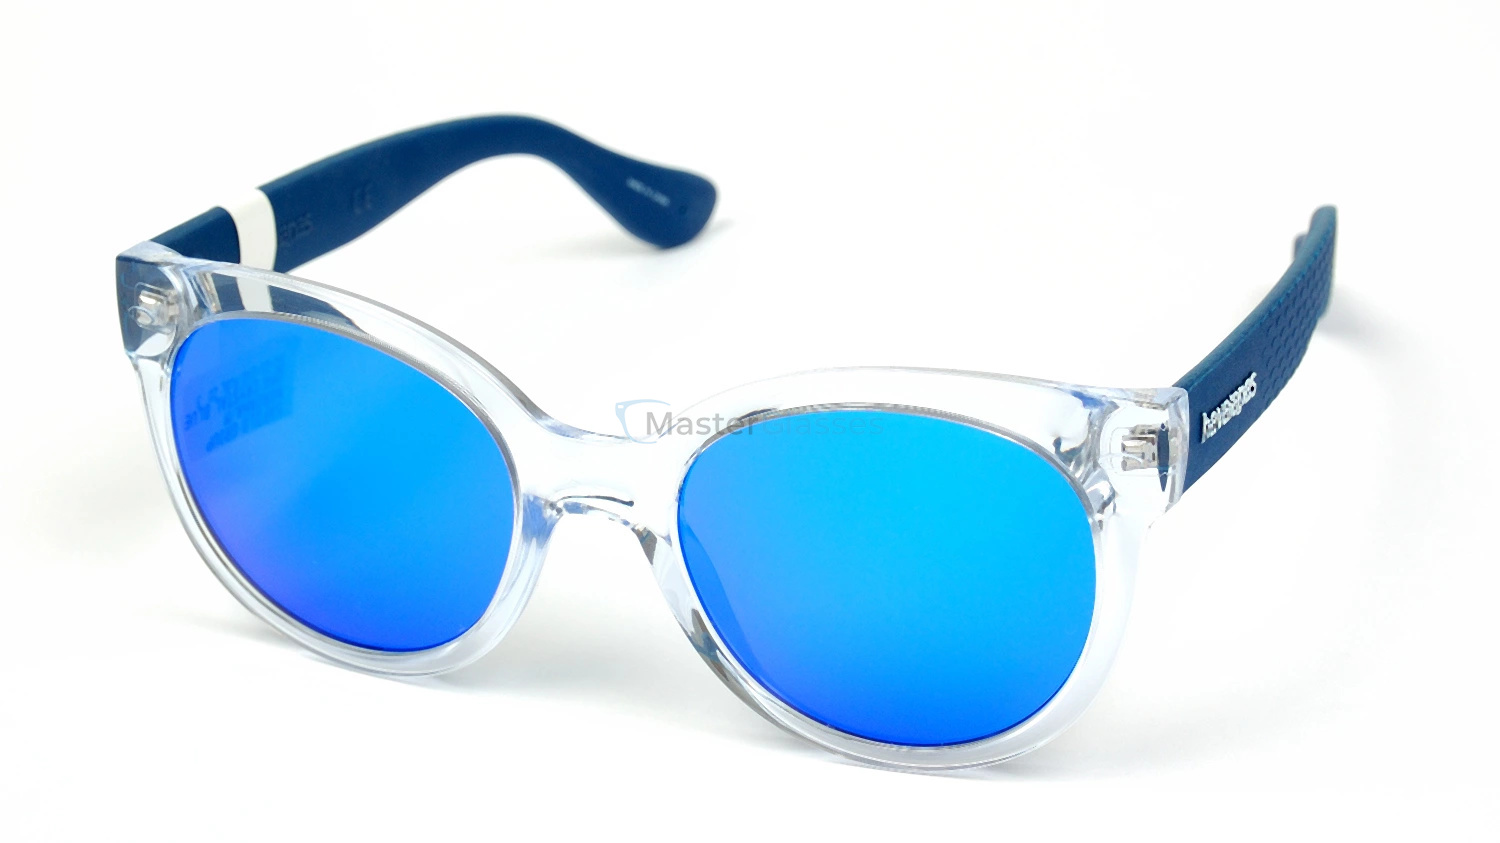 Купить синие очки. Havaianas очки Paraty/l. Havaianas очки Blue. Havaianas Noronha / mr8 очки. Blue Bay очки солнцезащитные.